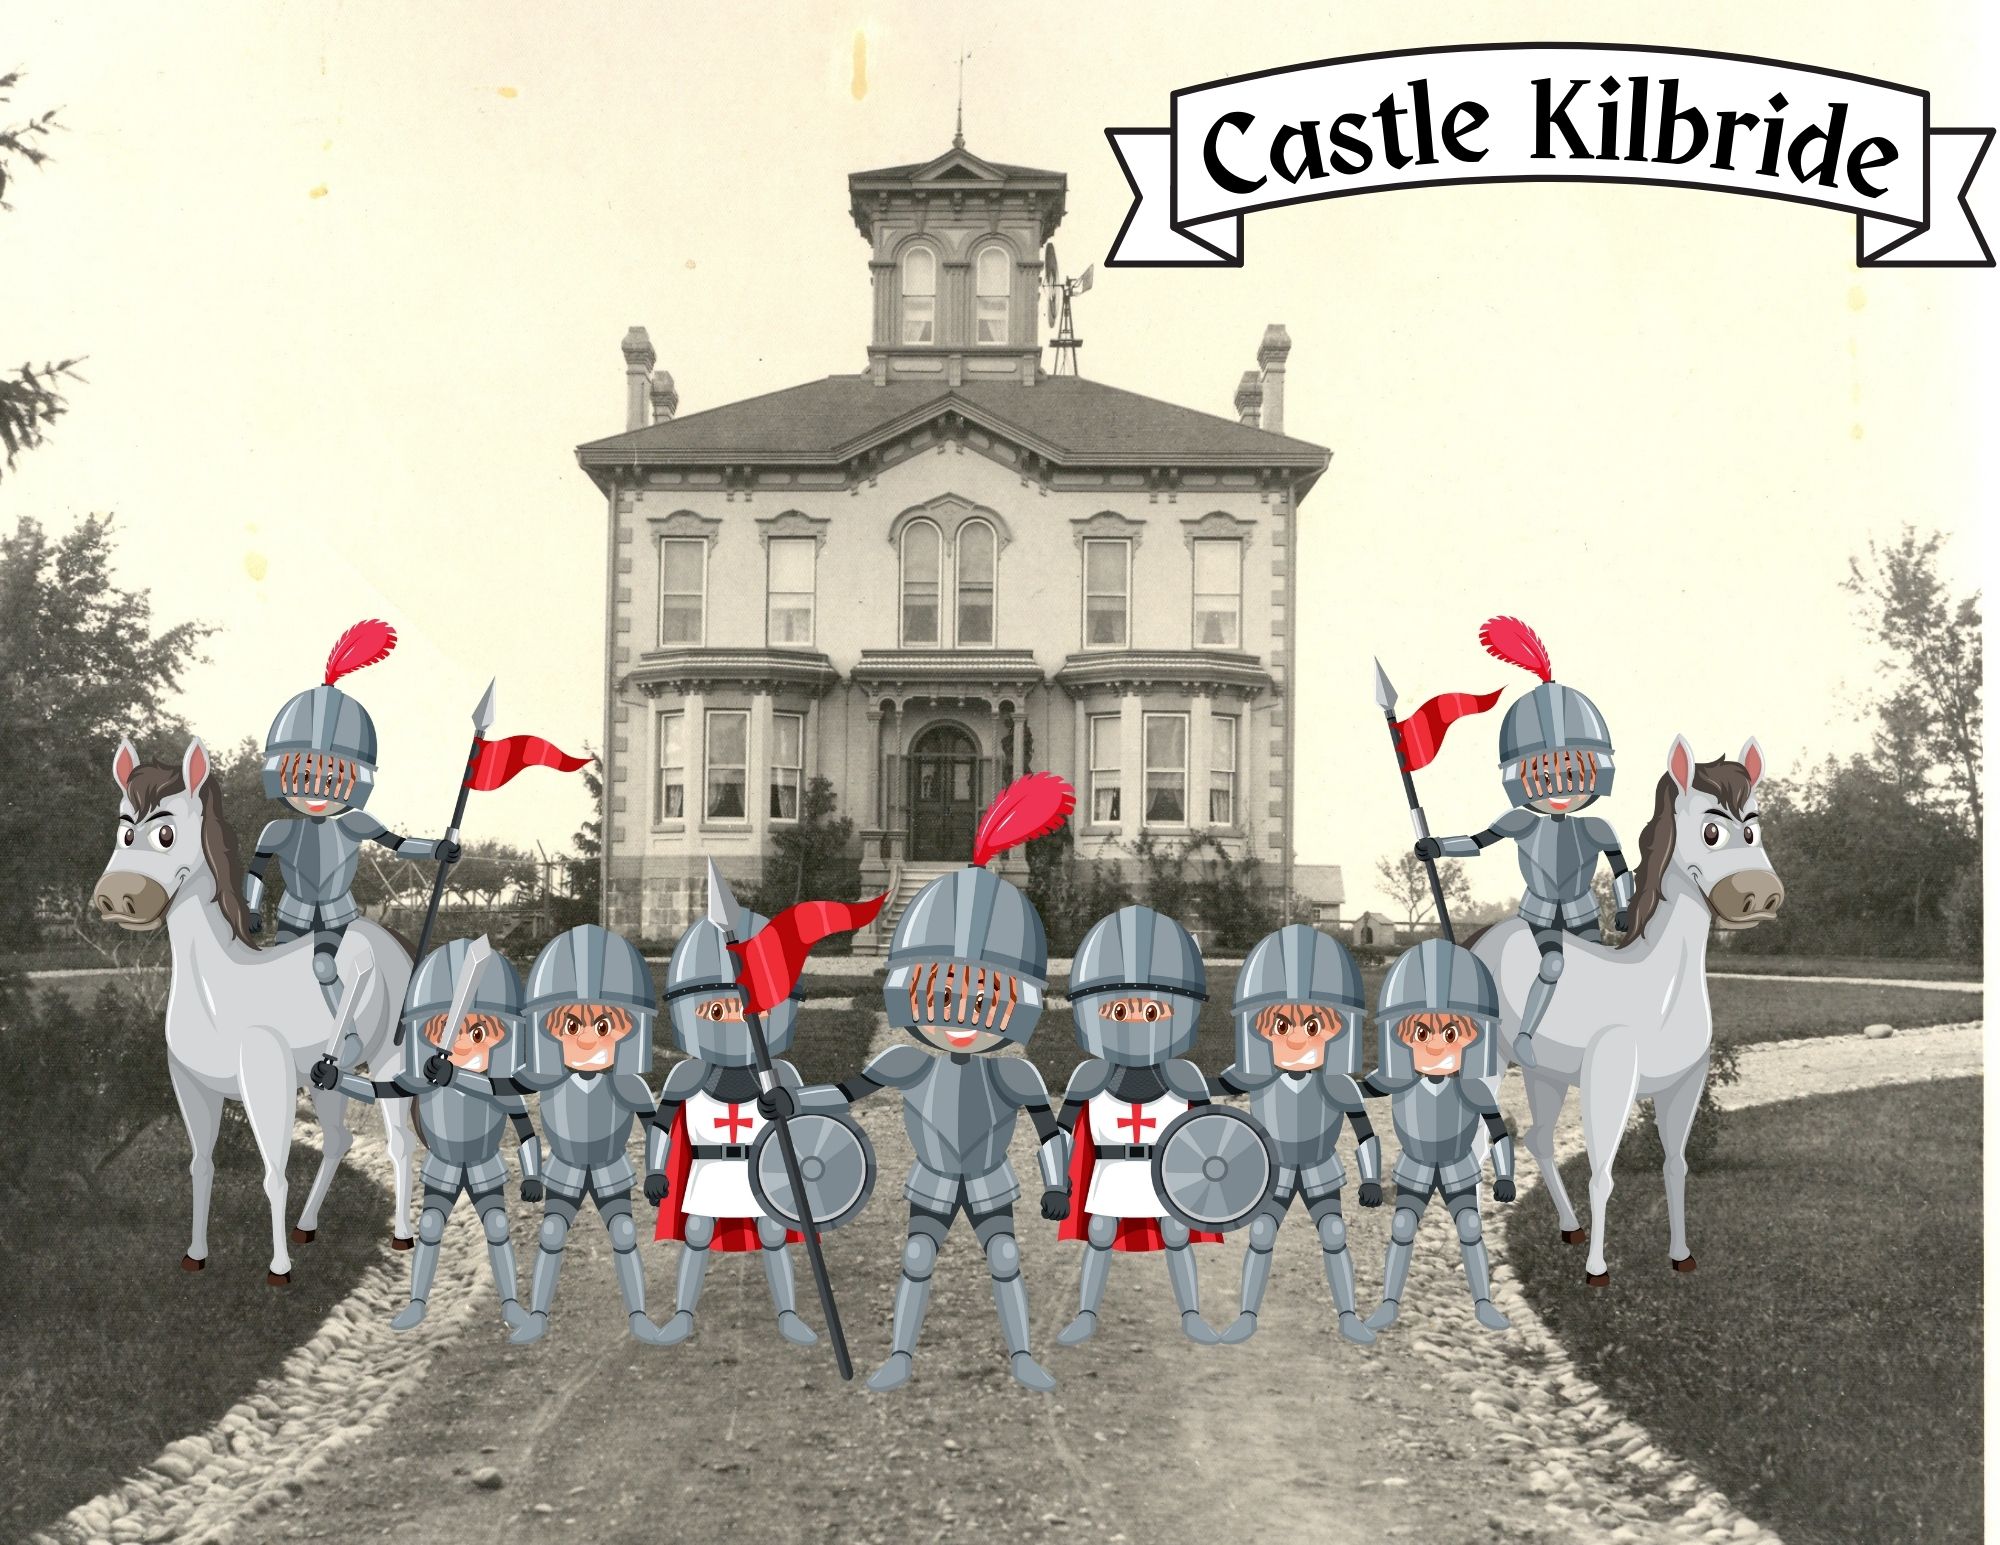 Castle Kilbride circa 1900